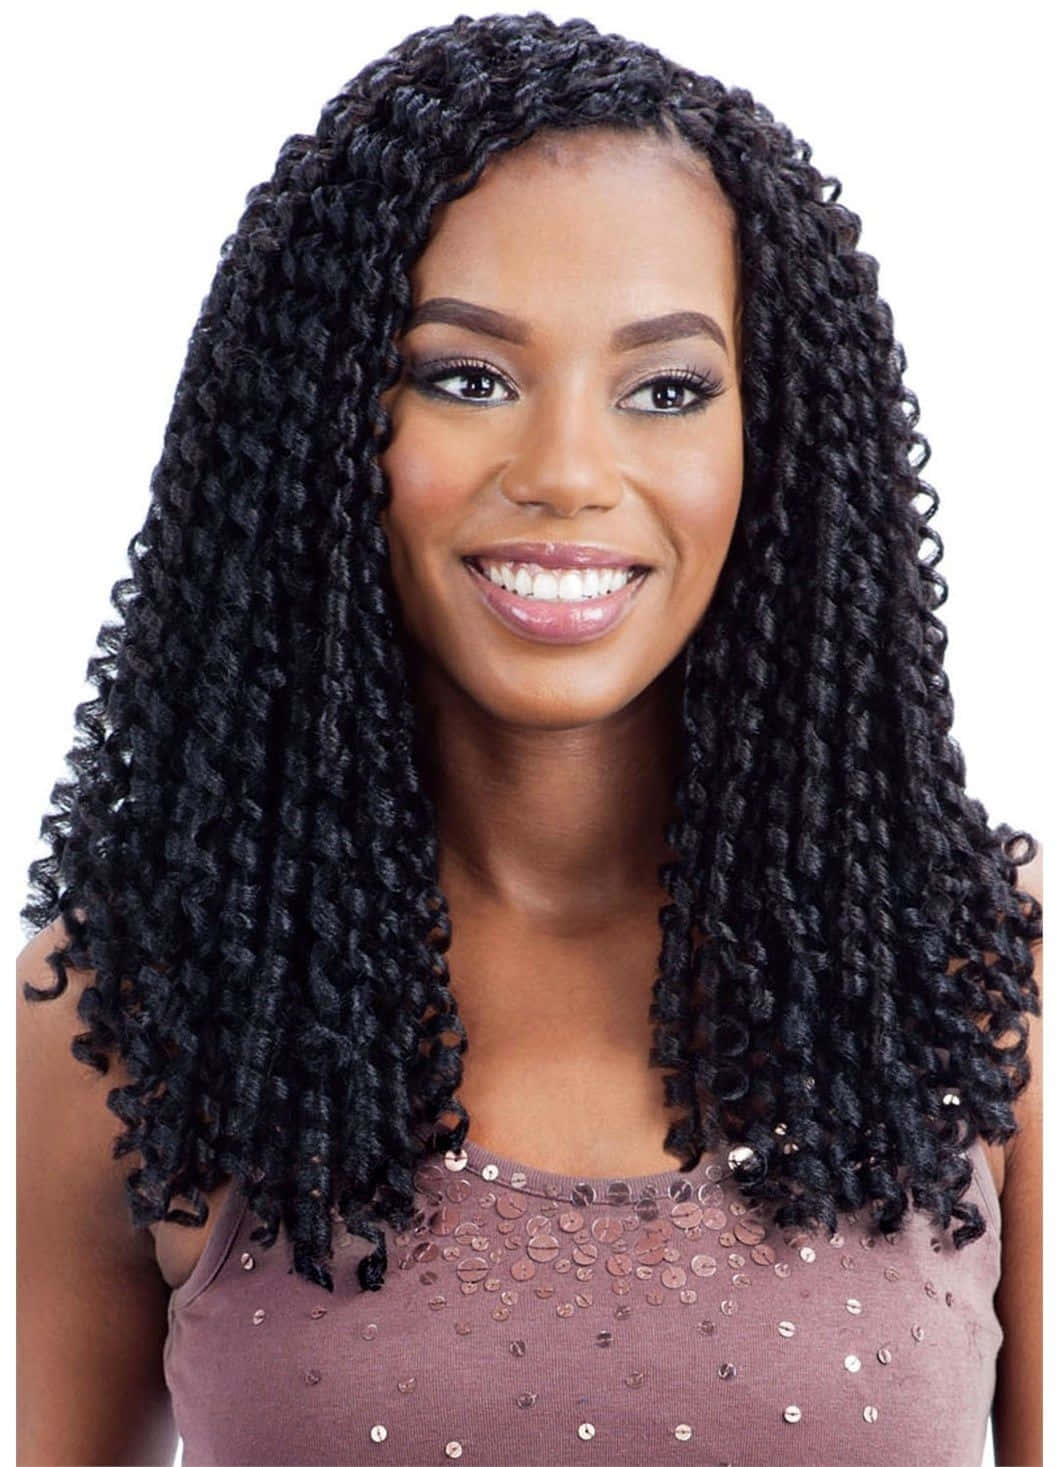 En sort kvinde med langt hår og et smil